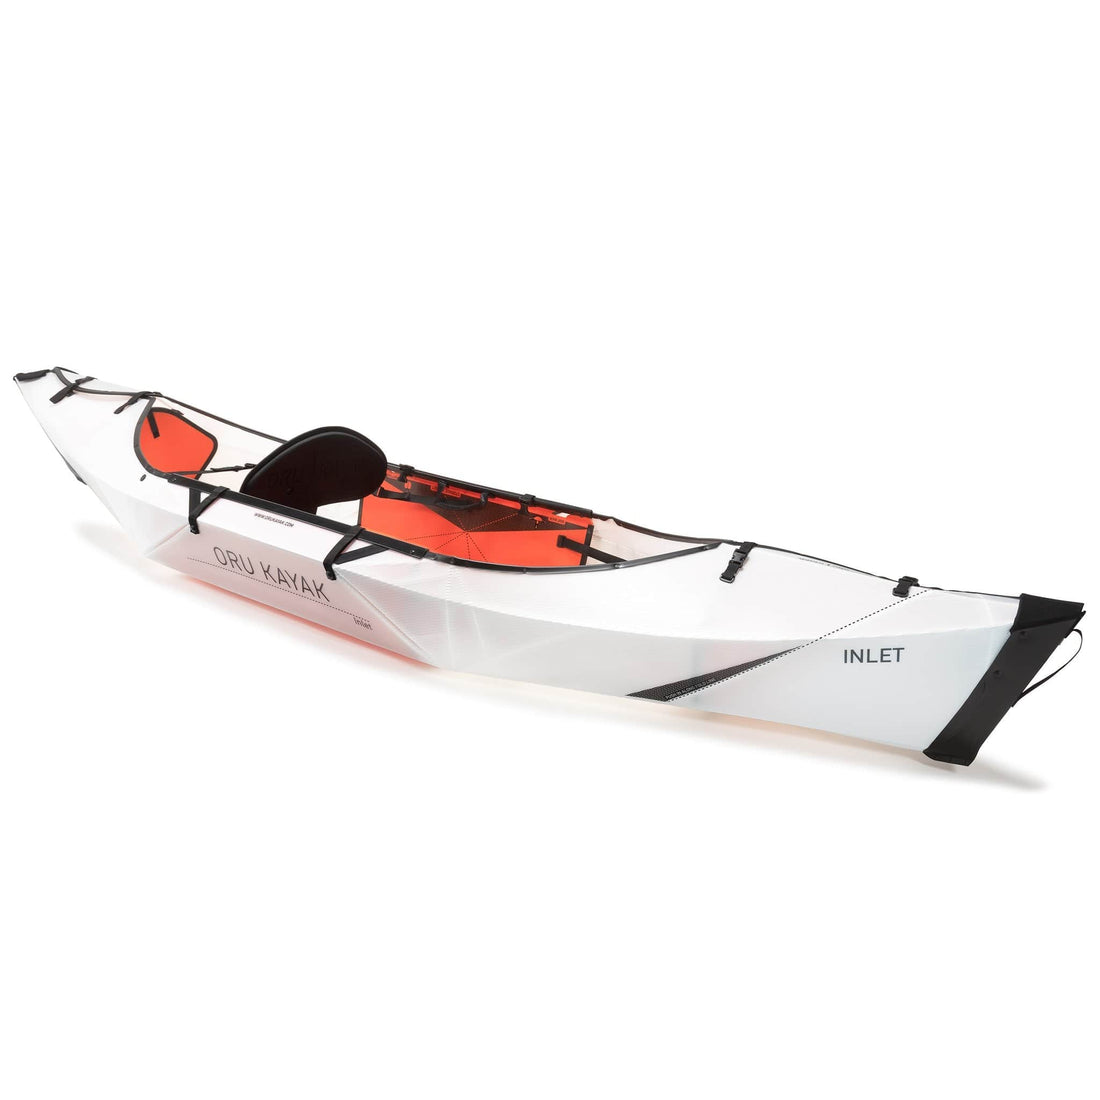 Ottawa Valley Air Paddle Oru Kayak - Inlet